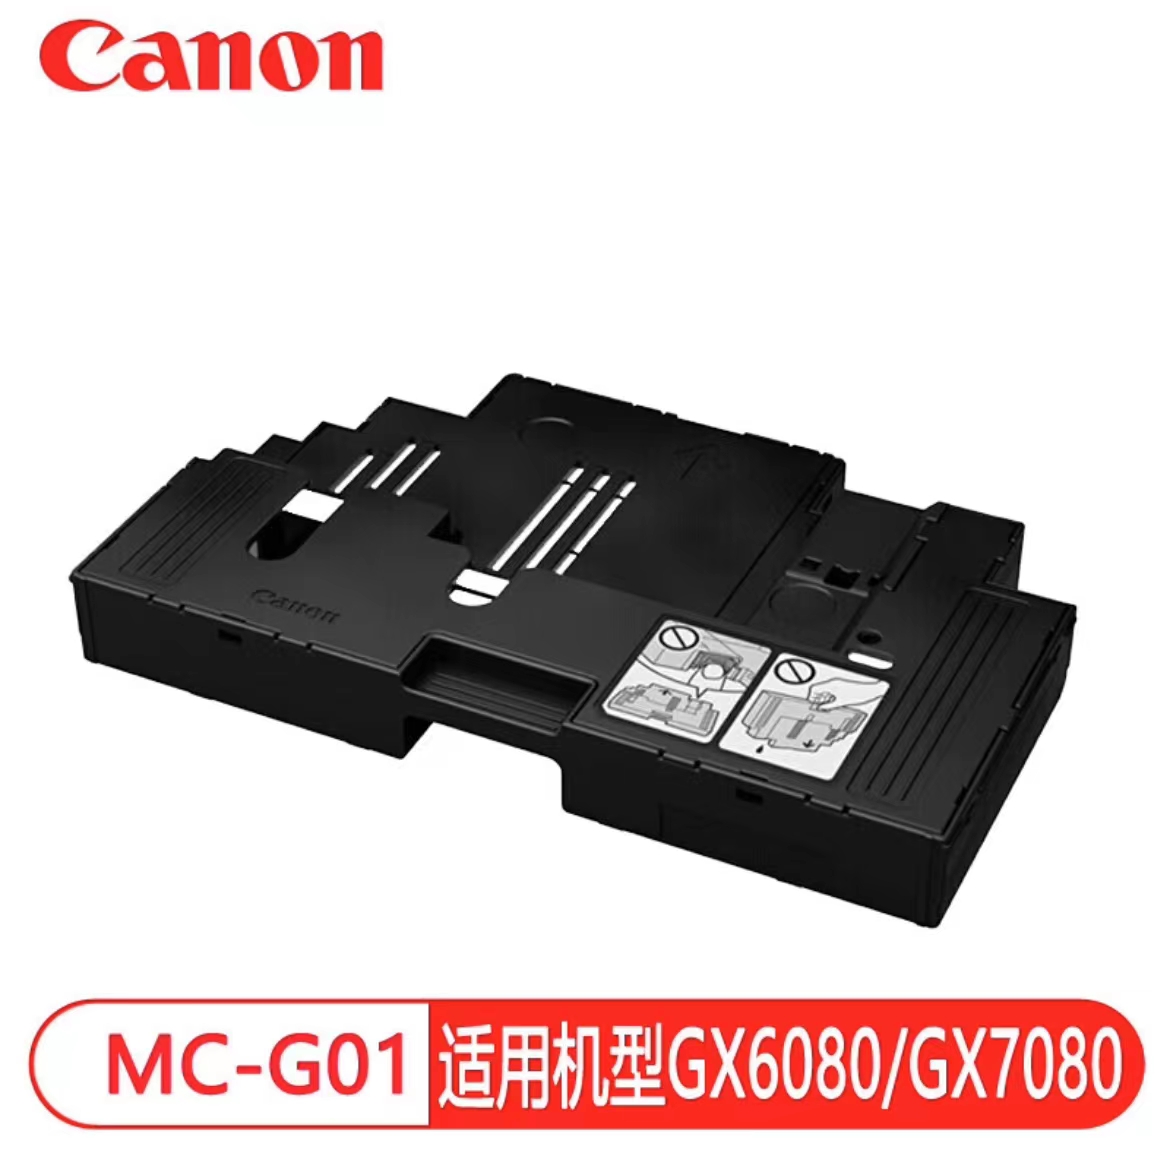 佳能(Canon)原装佳能MC-G01废墨仓适用GX6080/GX7080复印机维护墨盒 废墨仓